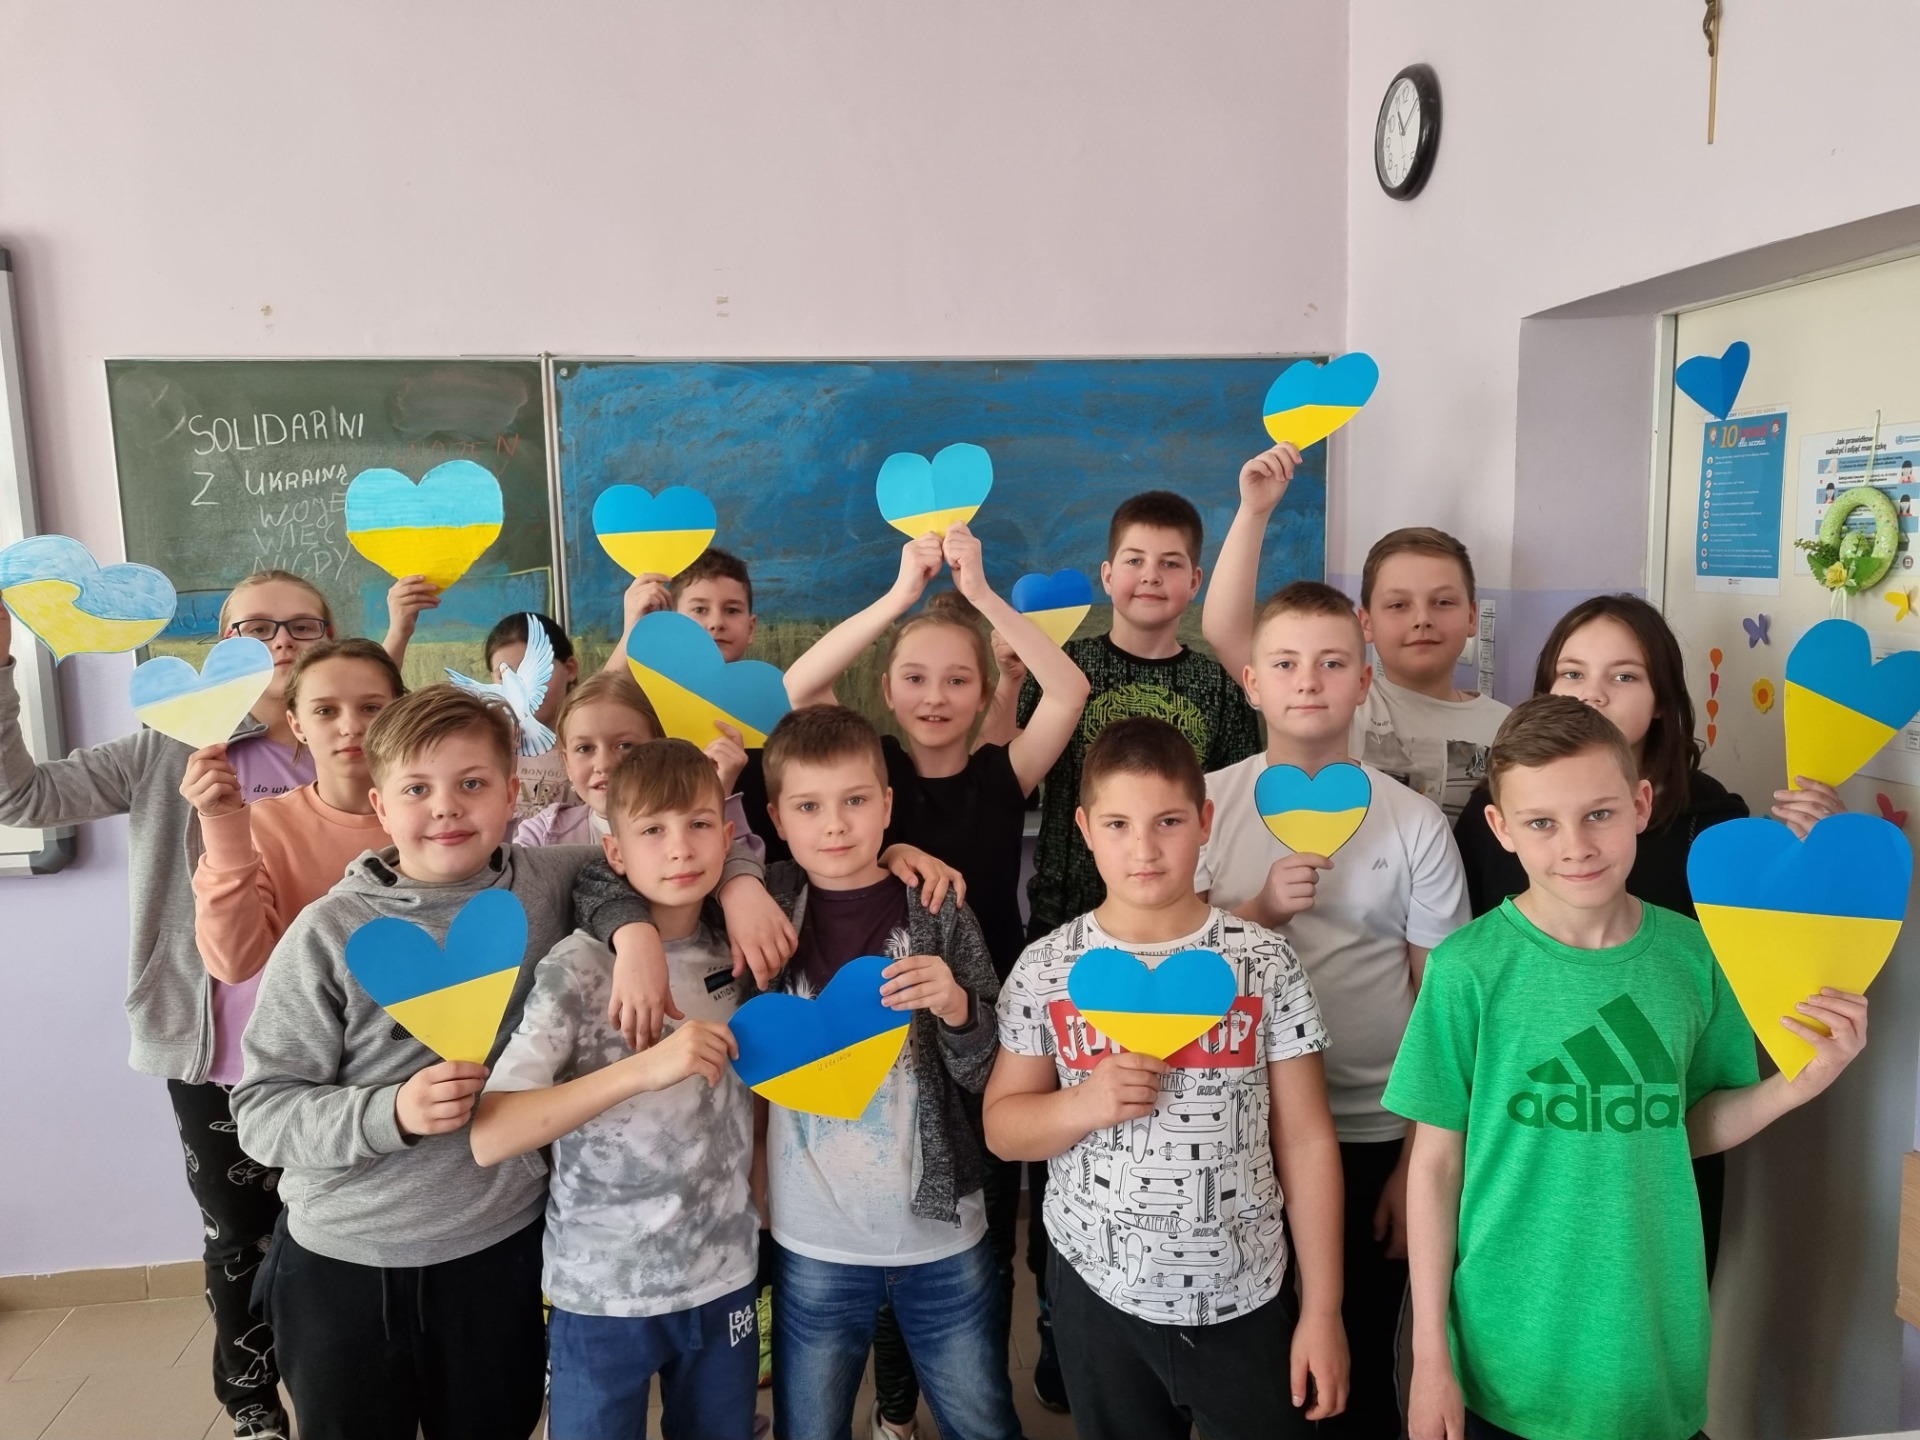 Nasi Uczniowie solidarni z Ukrainą - Obrazek 5